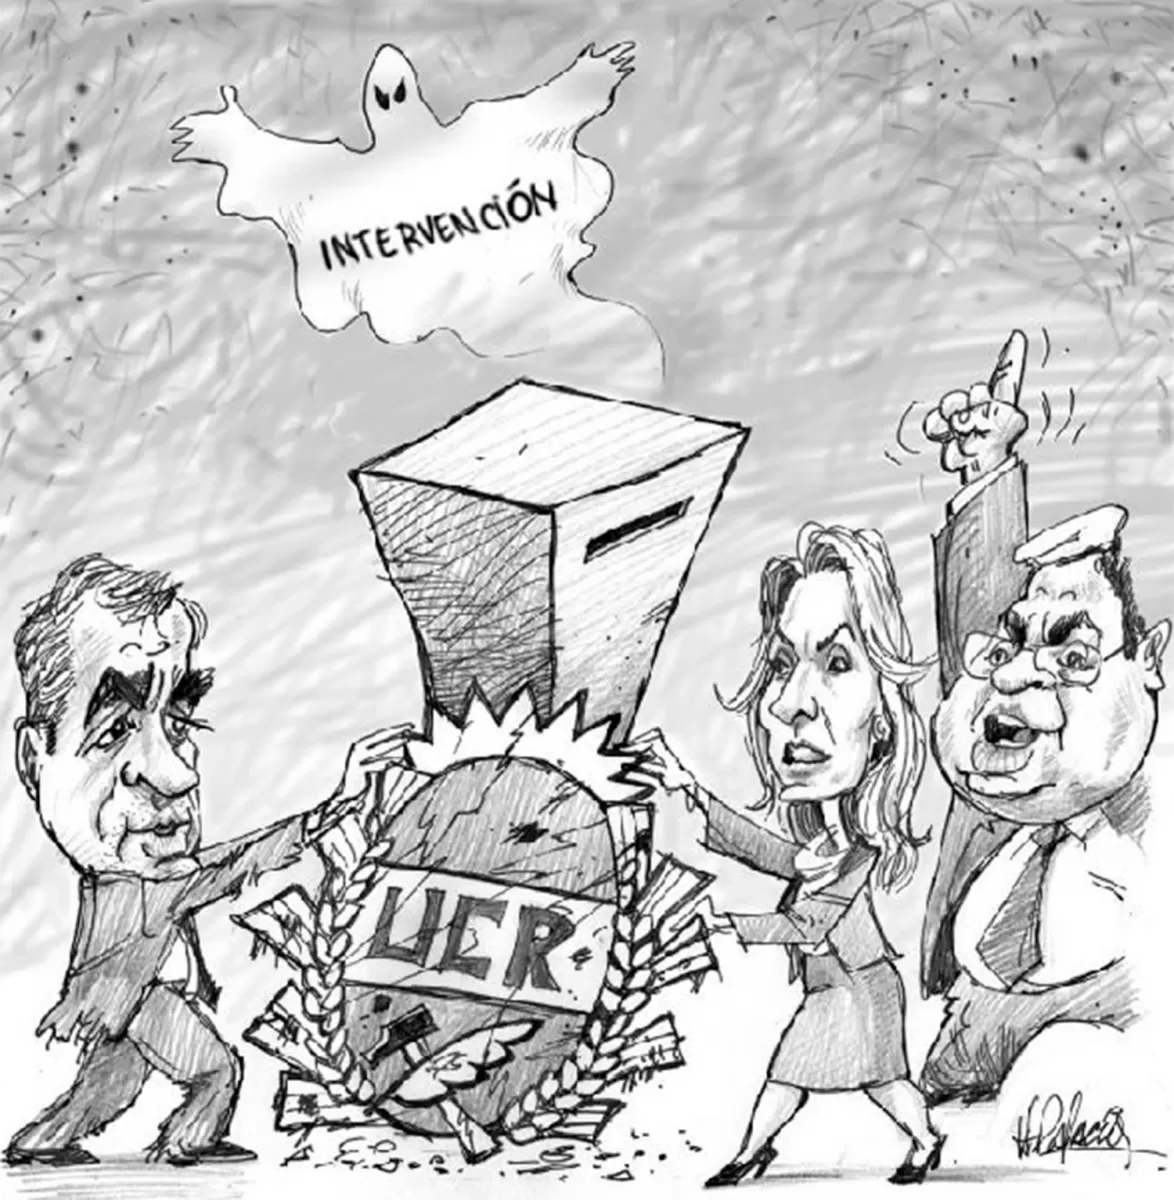 UCR: elecciones o ¿intervención?